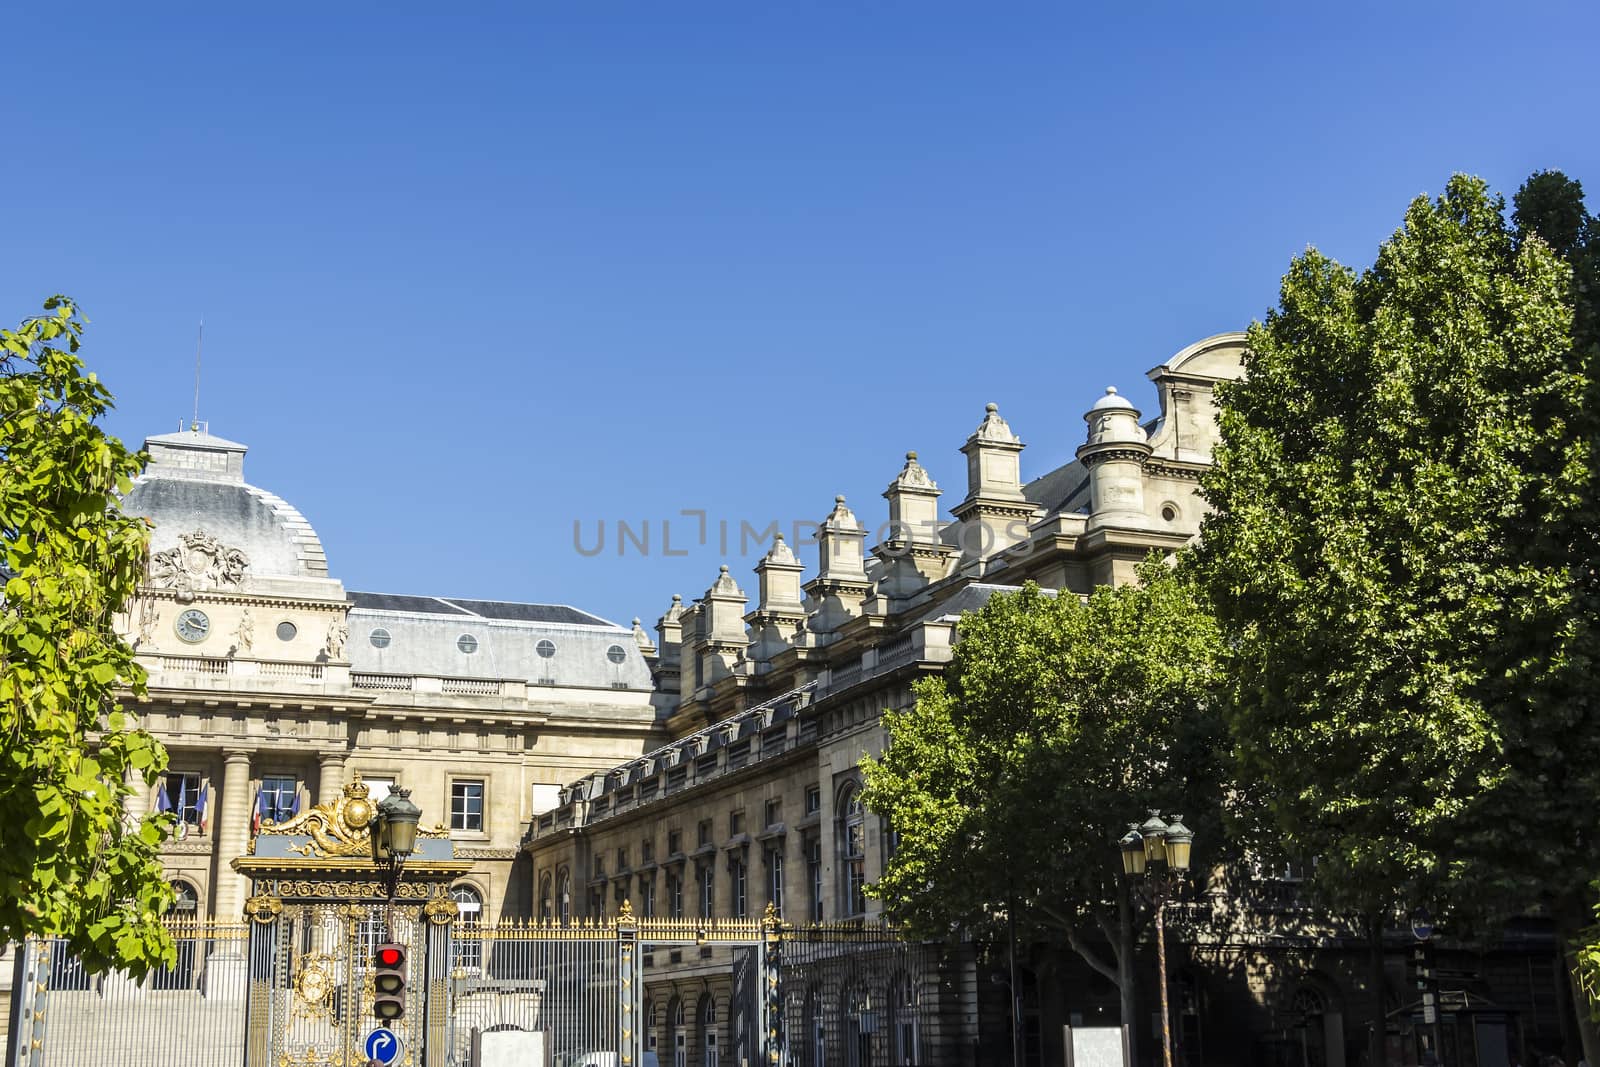 Tribunal de Grande Instance, Boulevard du Palais, Paris, France by Tetyana